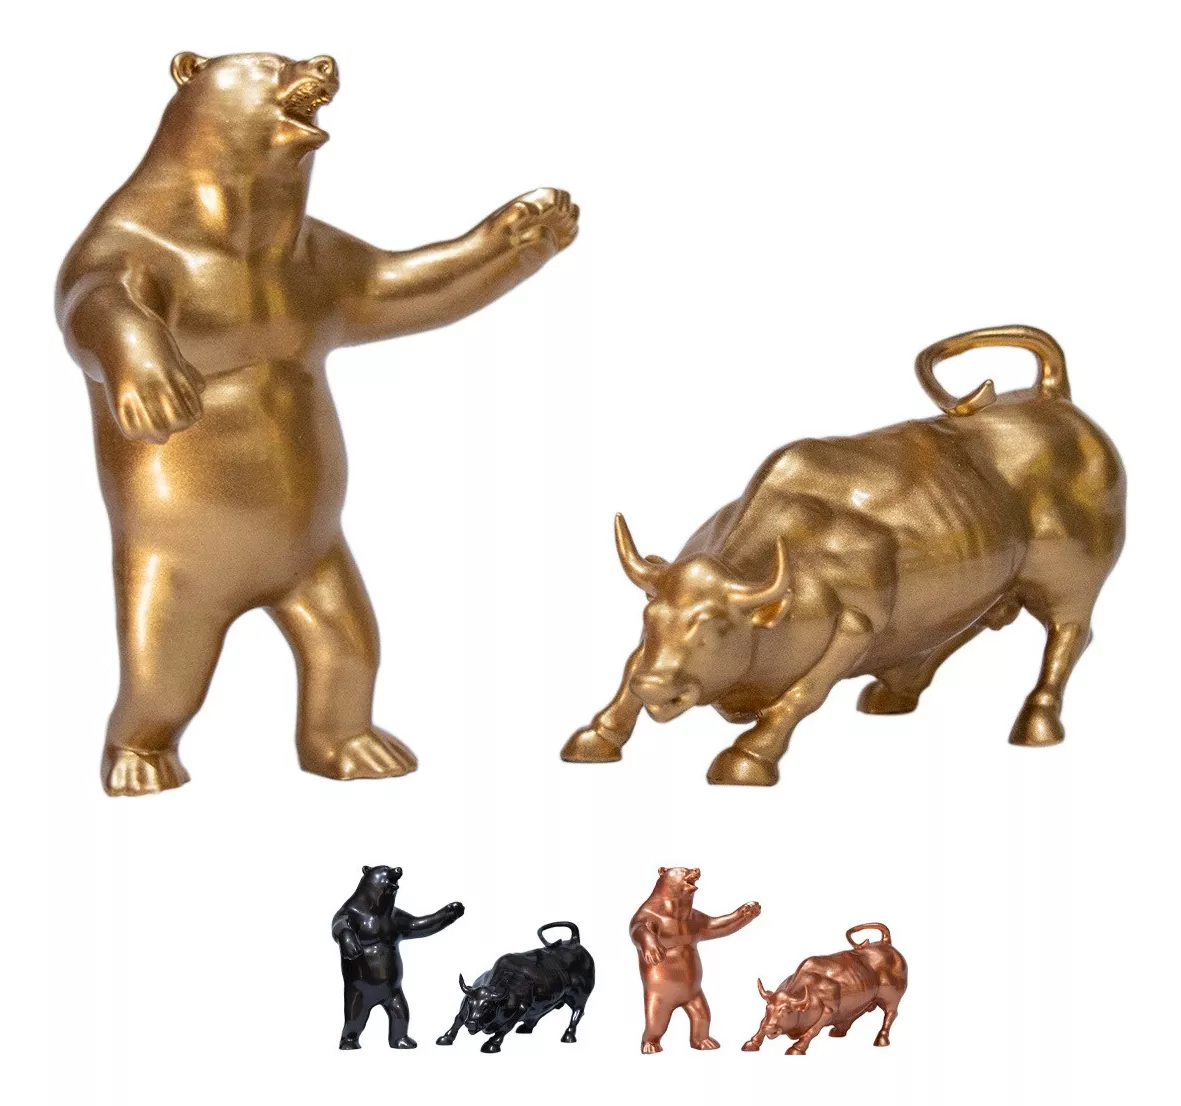 Segunda imagem para pesquisa de touro de ouro